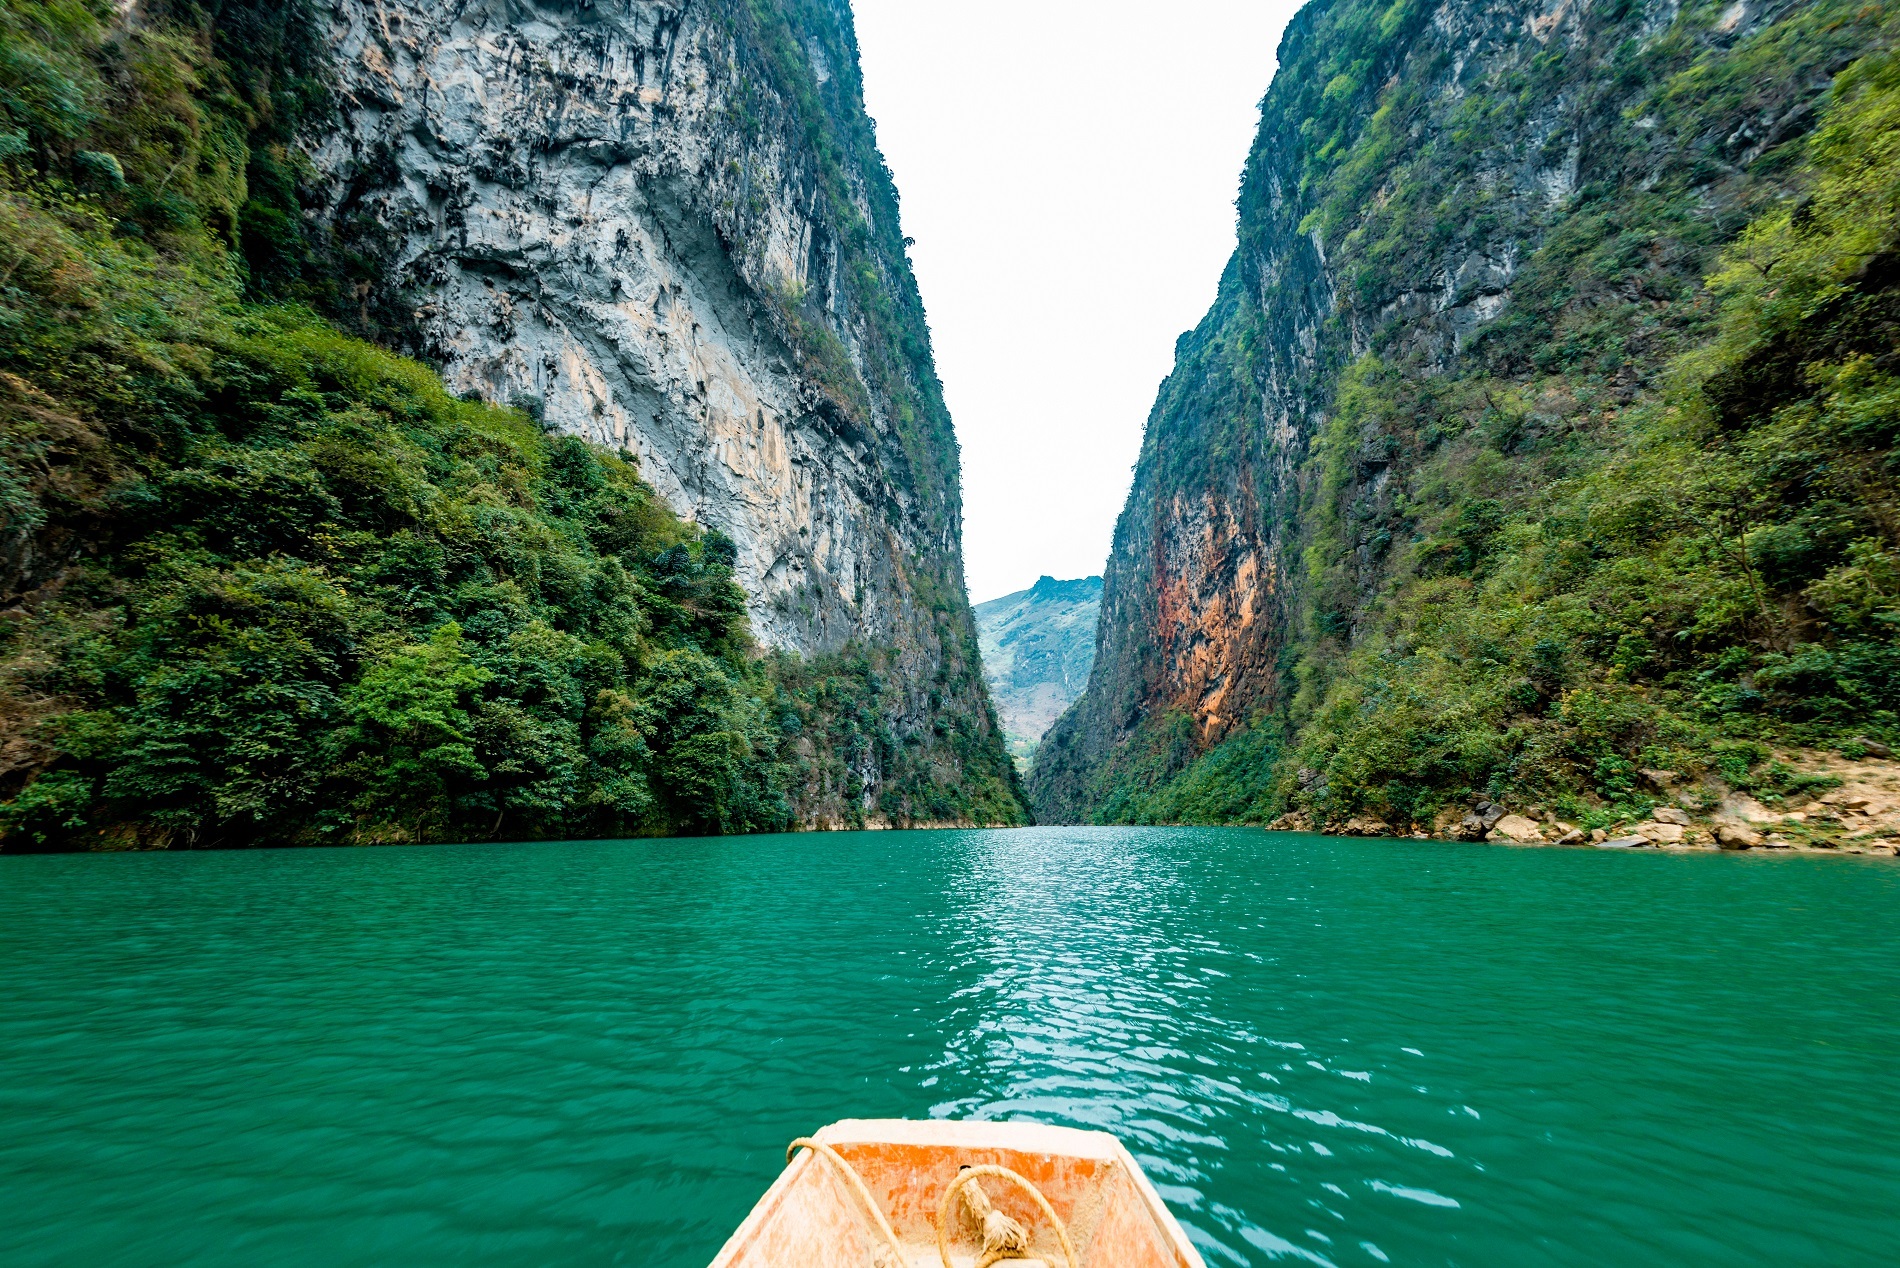 Hẻm vực từ góc nhìn thuyền kayak. Ảnh: Kernel Nguyen/Shutterstock.